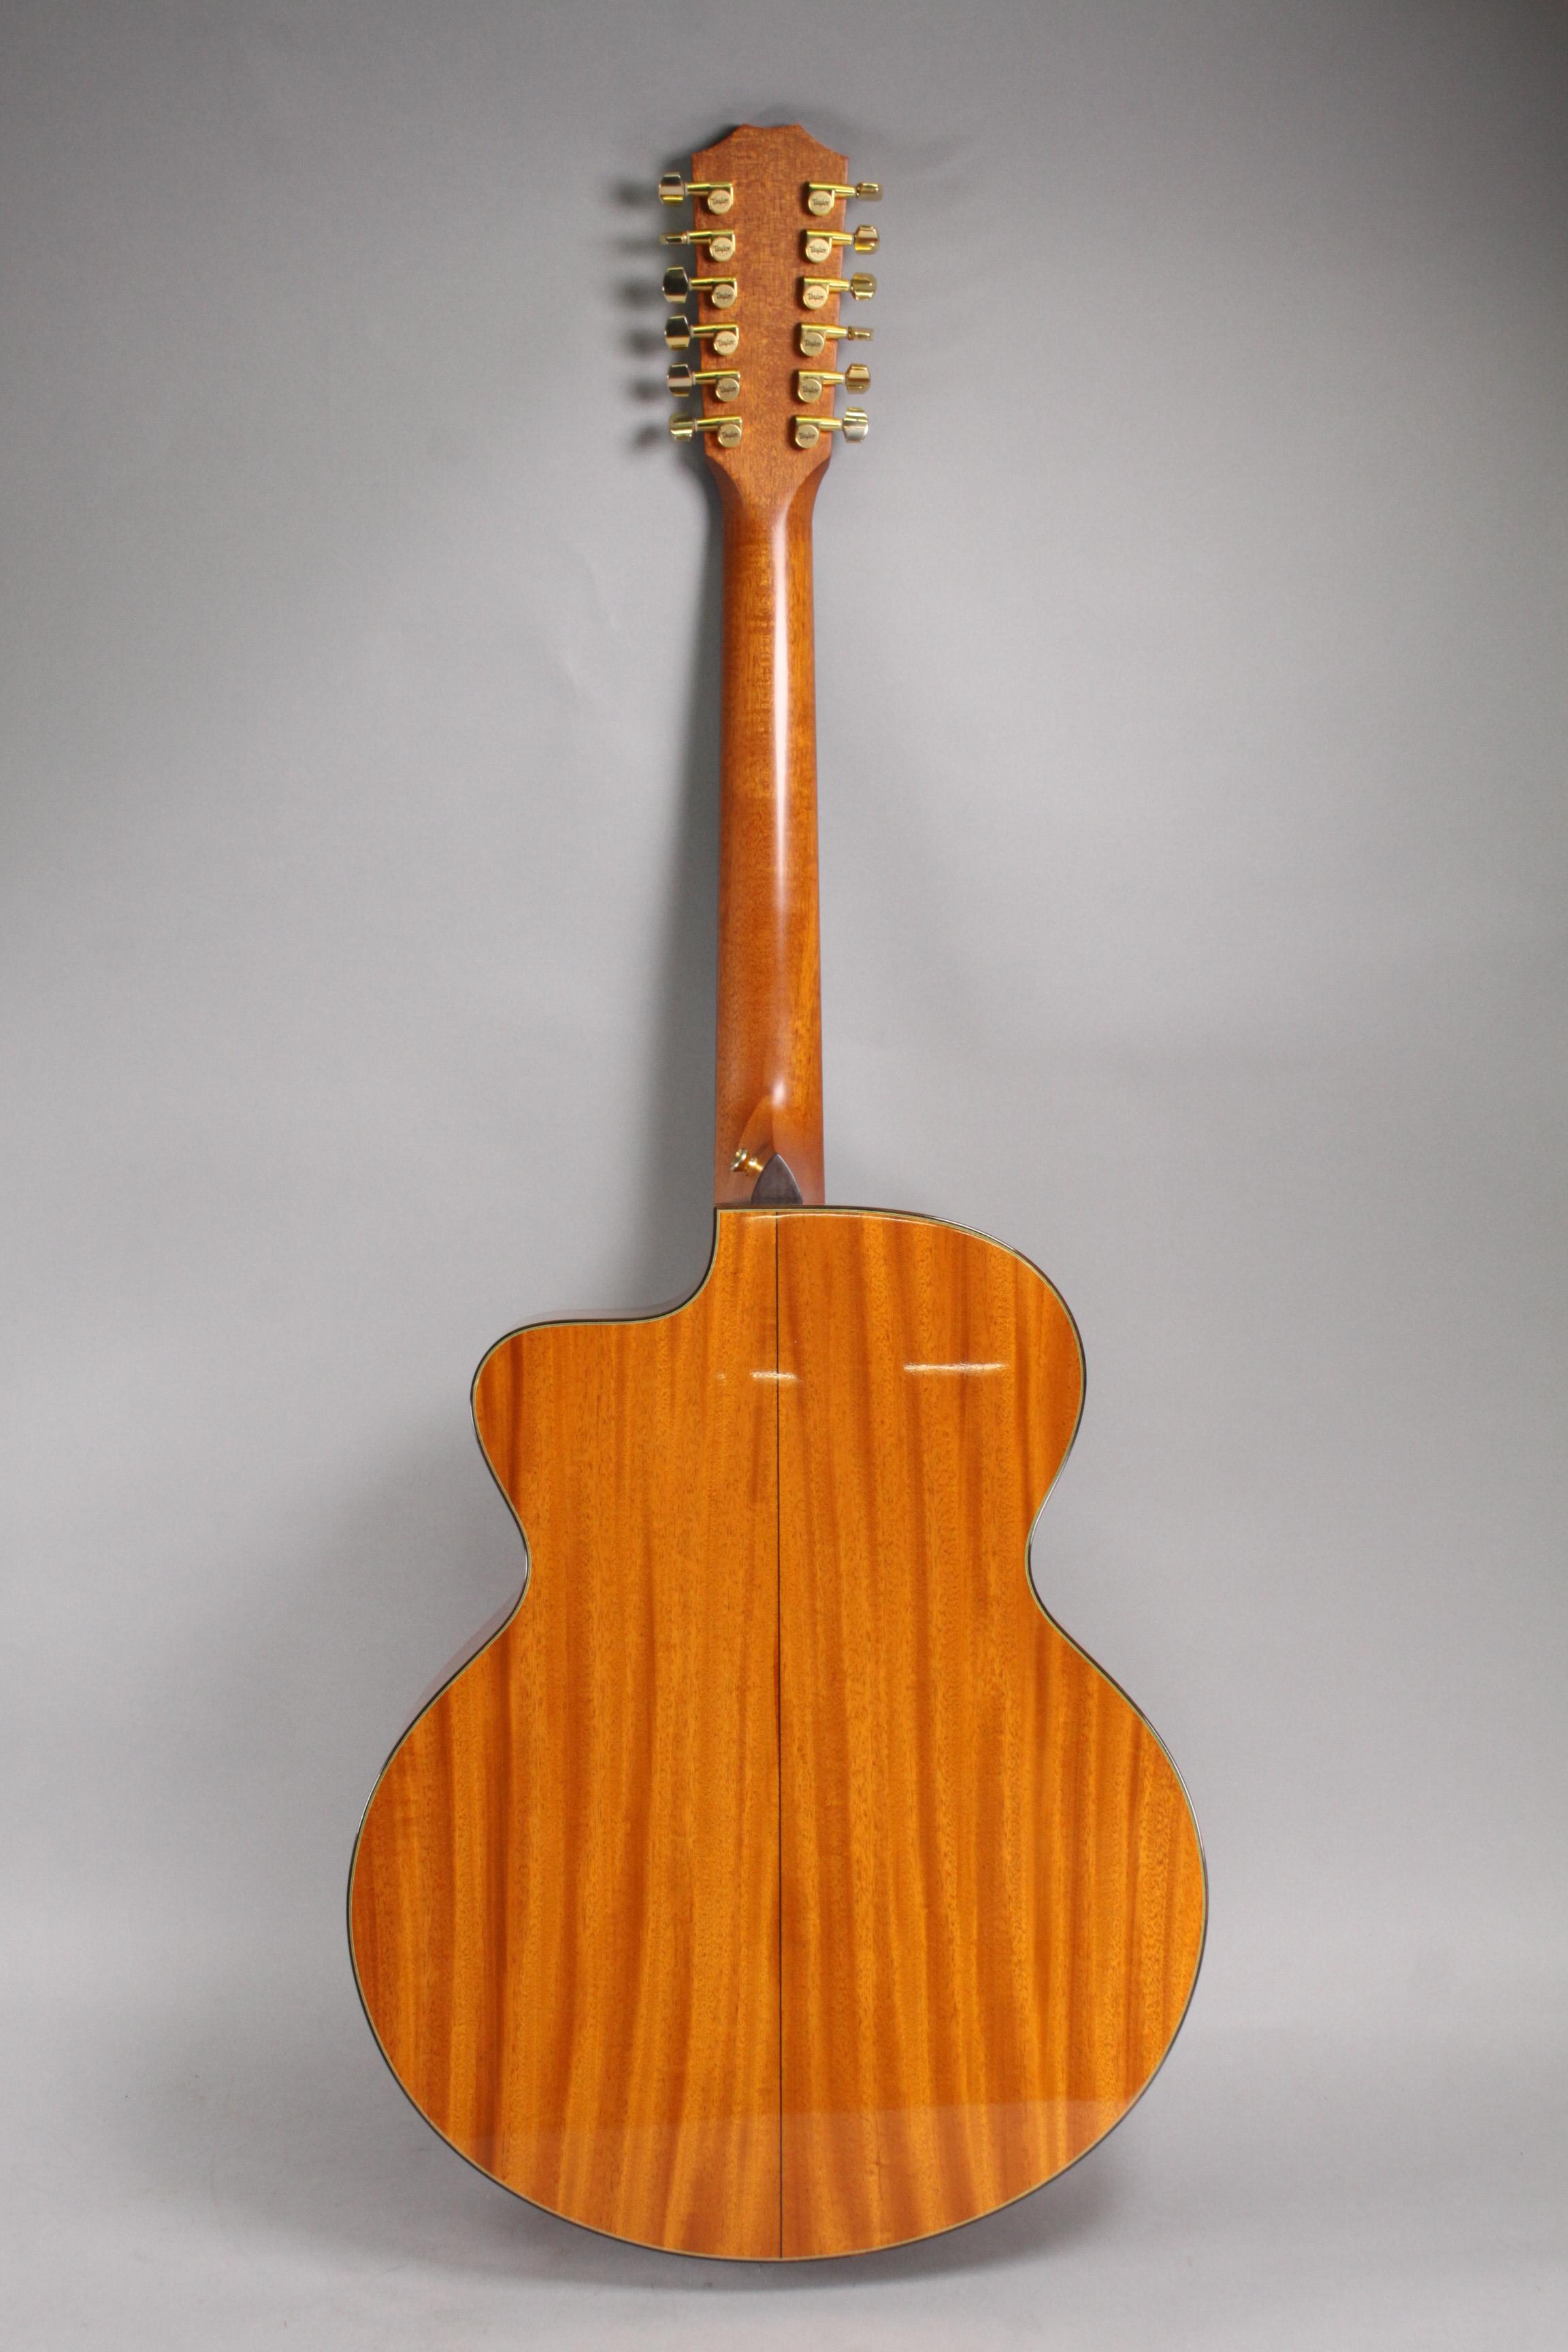 Taylor "Leo Kottke Signature Model" 12 String Guitar w/ Case